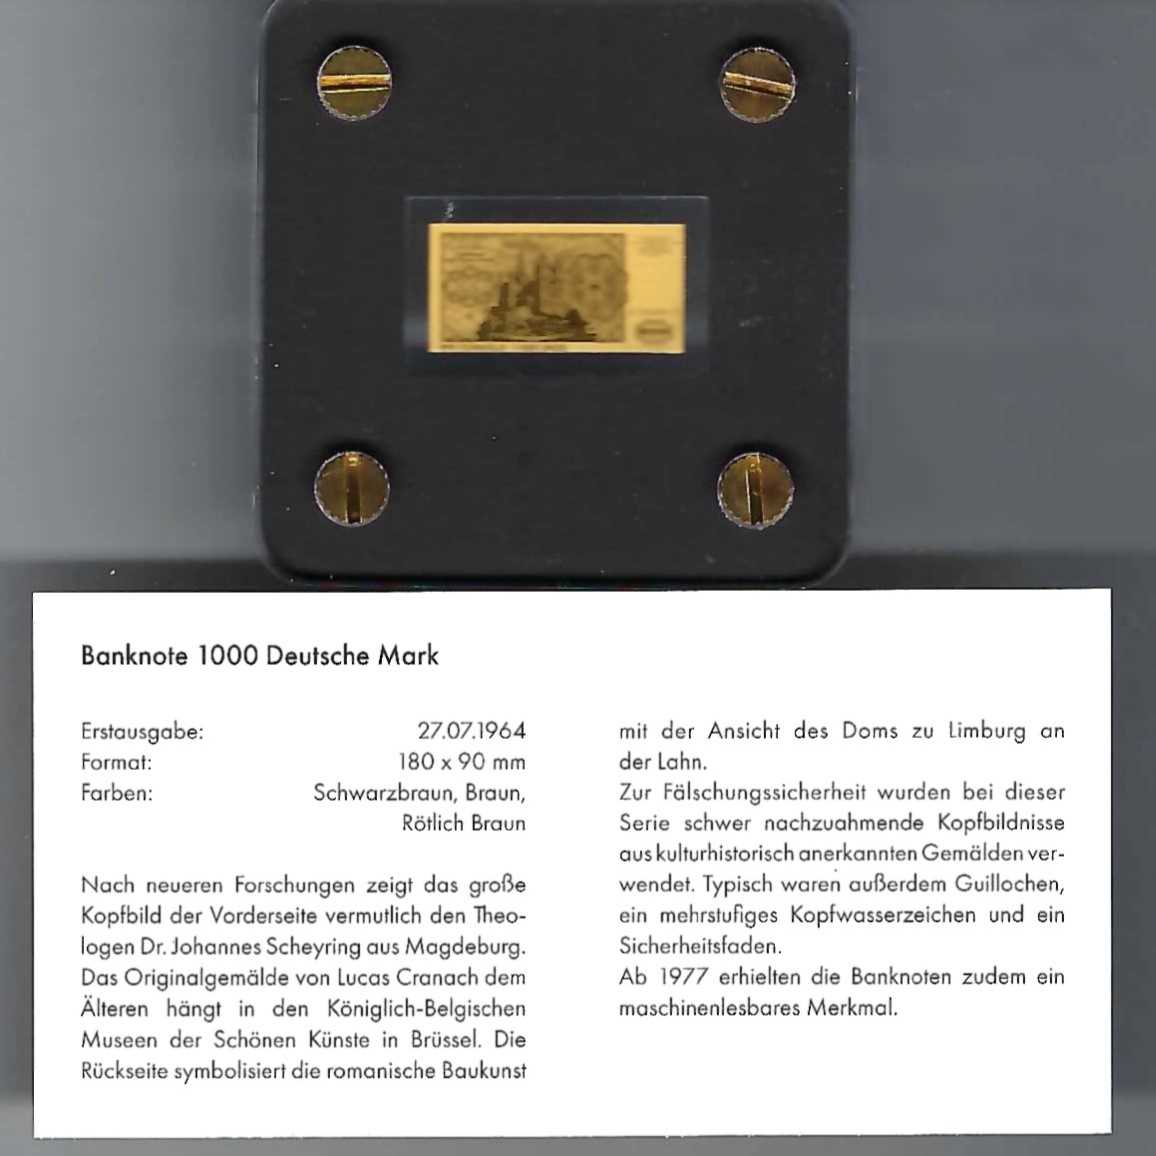  Goldbarren Deutsche Mark Feingold 999 1/500 oz Golden Gate Koblenz Frank Maurer Koblenz AB 729   